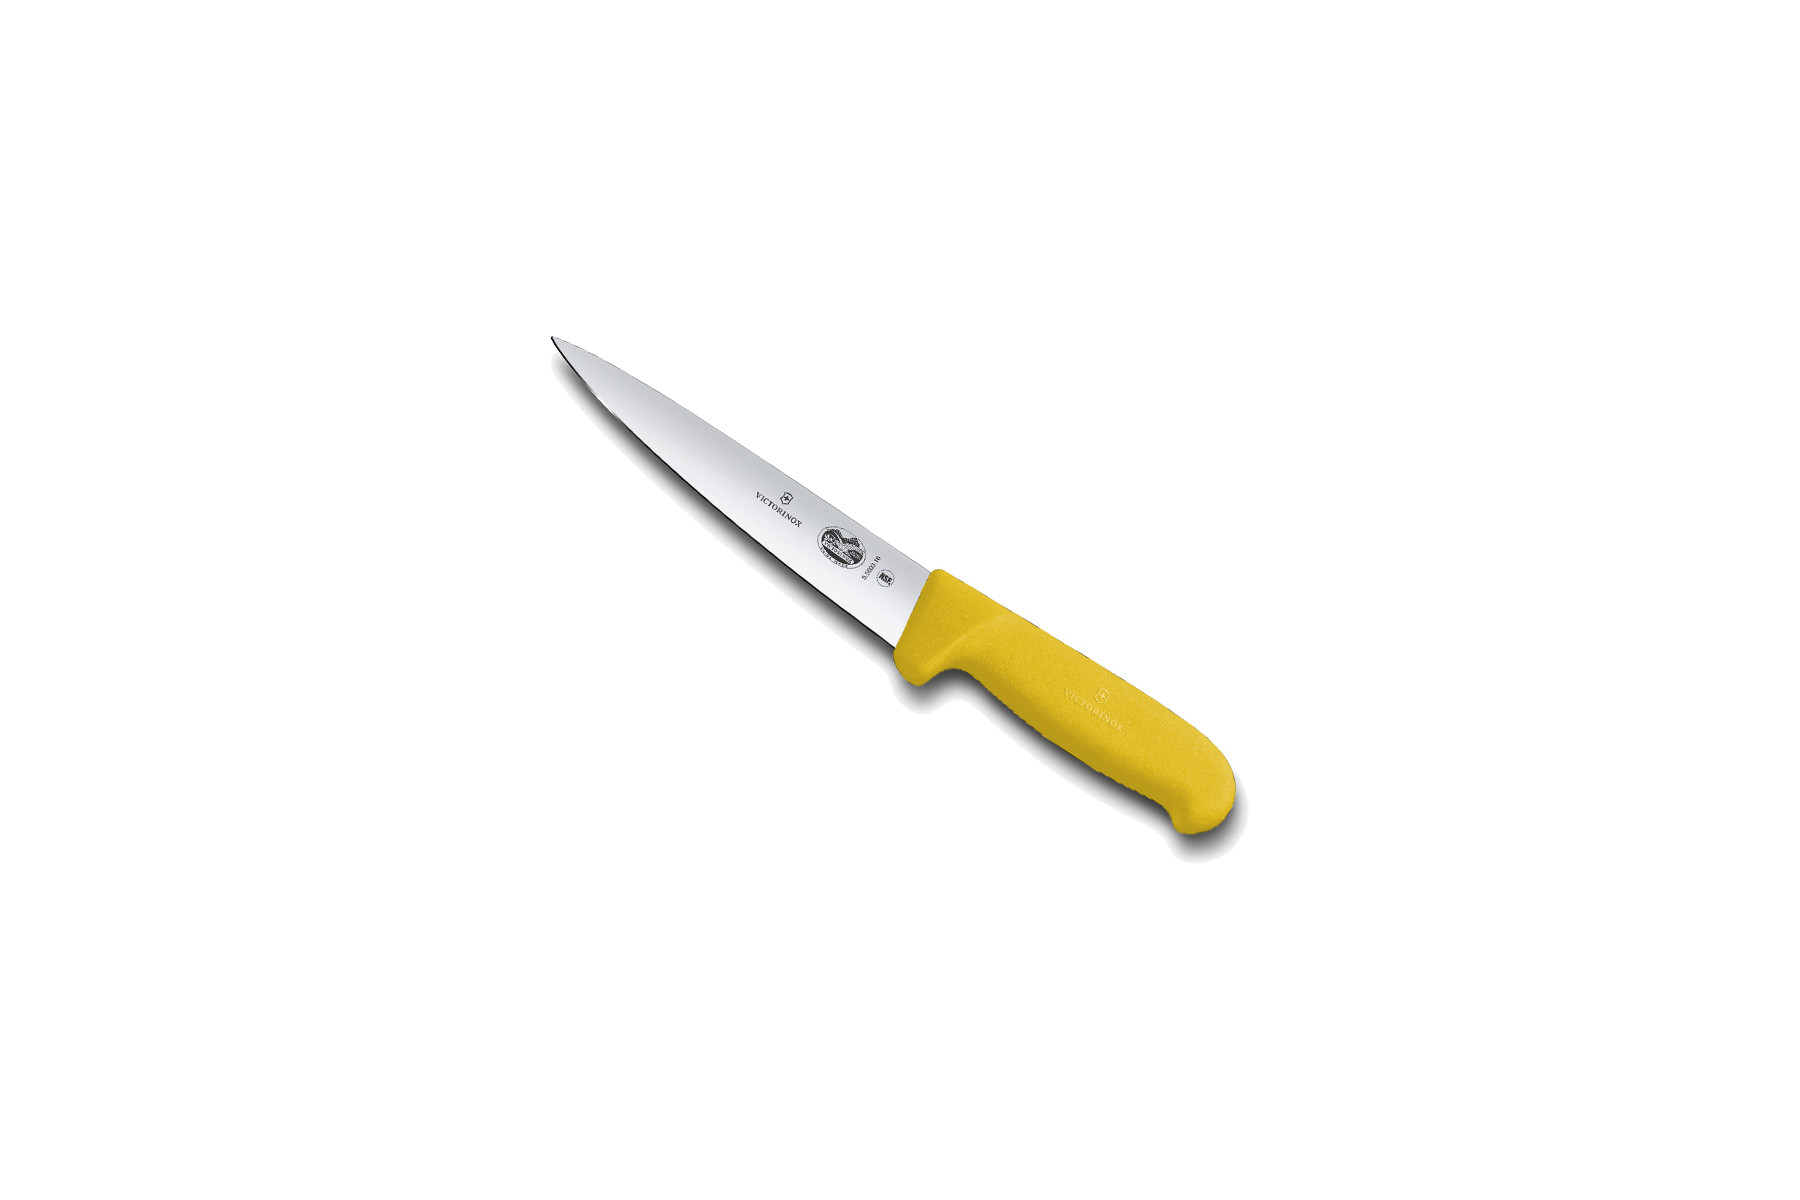 Couteau à désosser/saigner Victorinox lame 16 cm - Manche Fibrox jaune